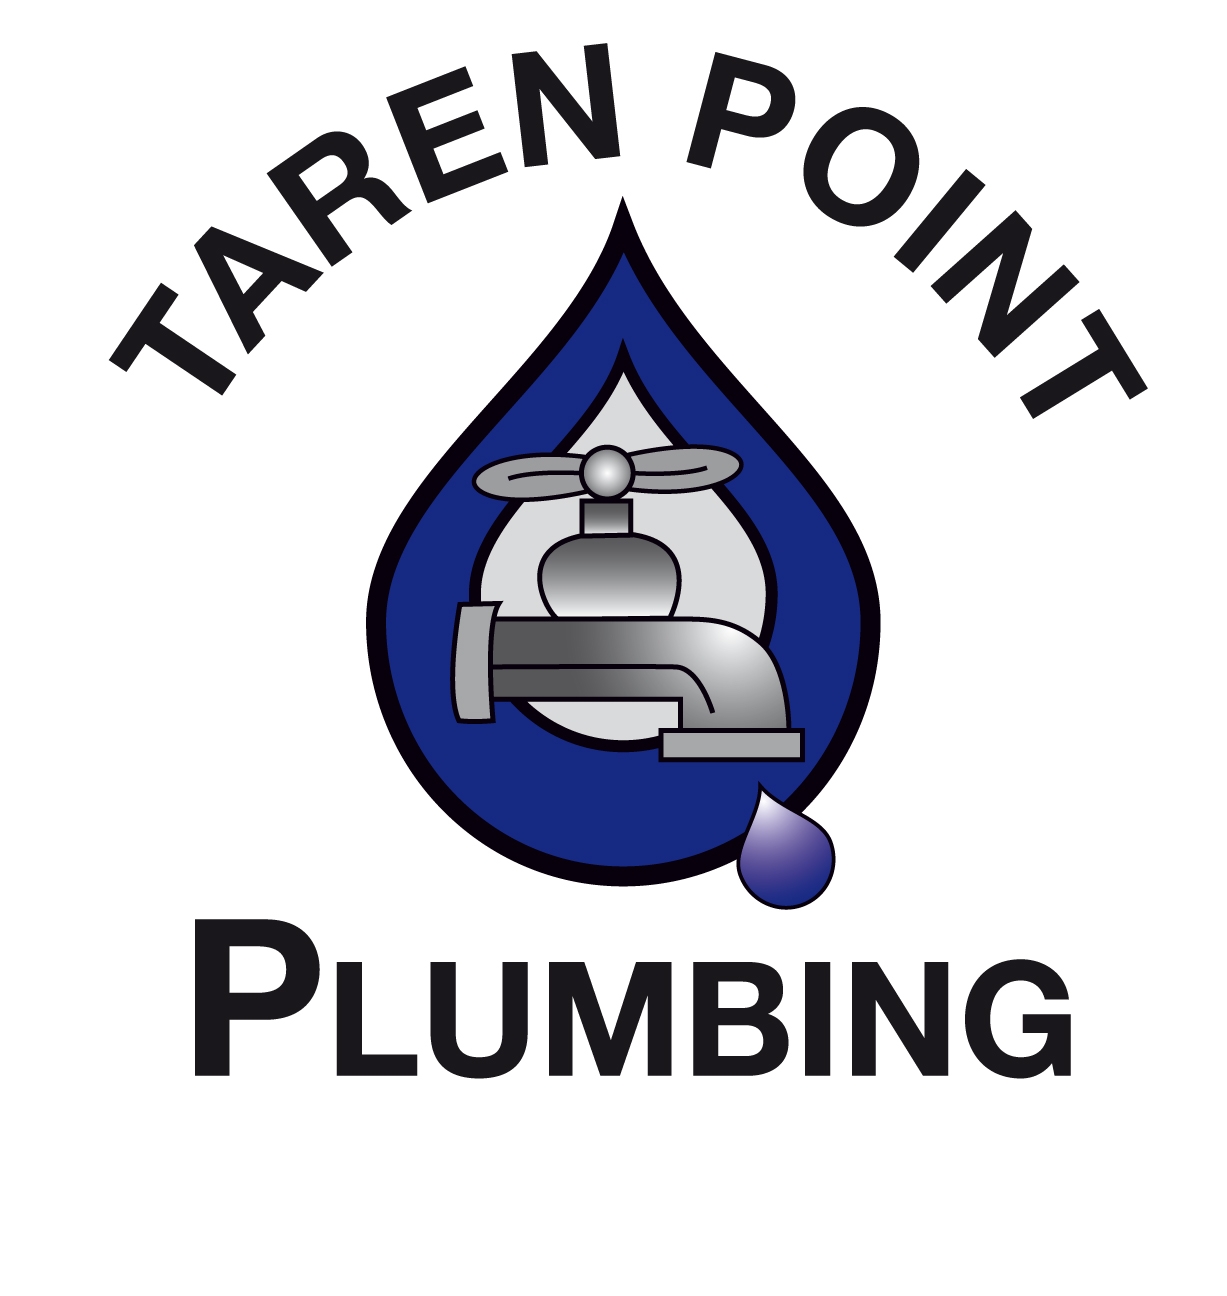 Taren Point Plumbing Pty Ltd